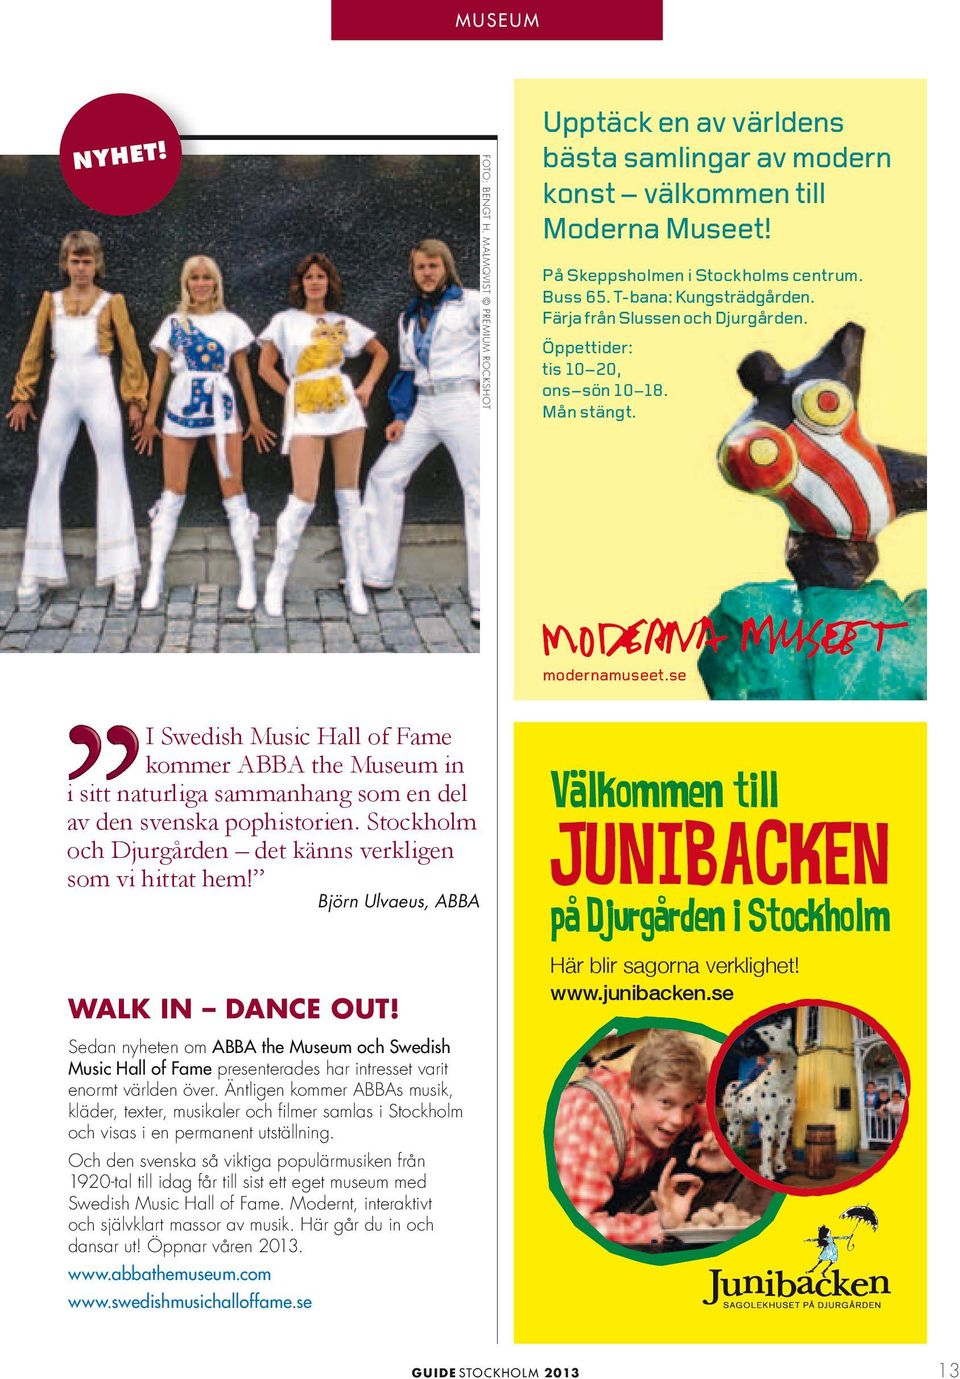 32 Sida 1 I Swedish Music Hall of Fame kommer ABBA the Museum in i sitt naturliga sammanhang som en del av den svenska pophistorien. Stockholm och Djurgården det känns verkligen som vi hittat hem!